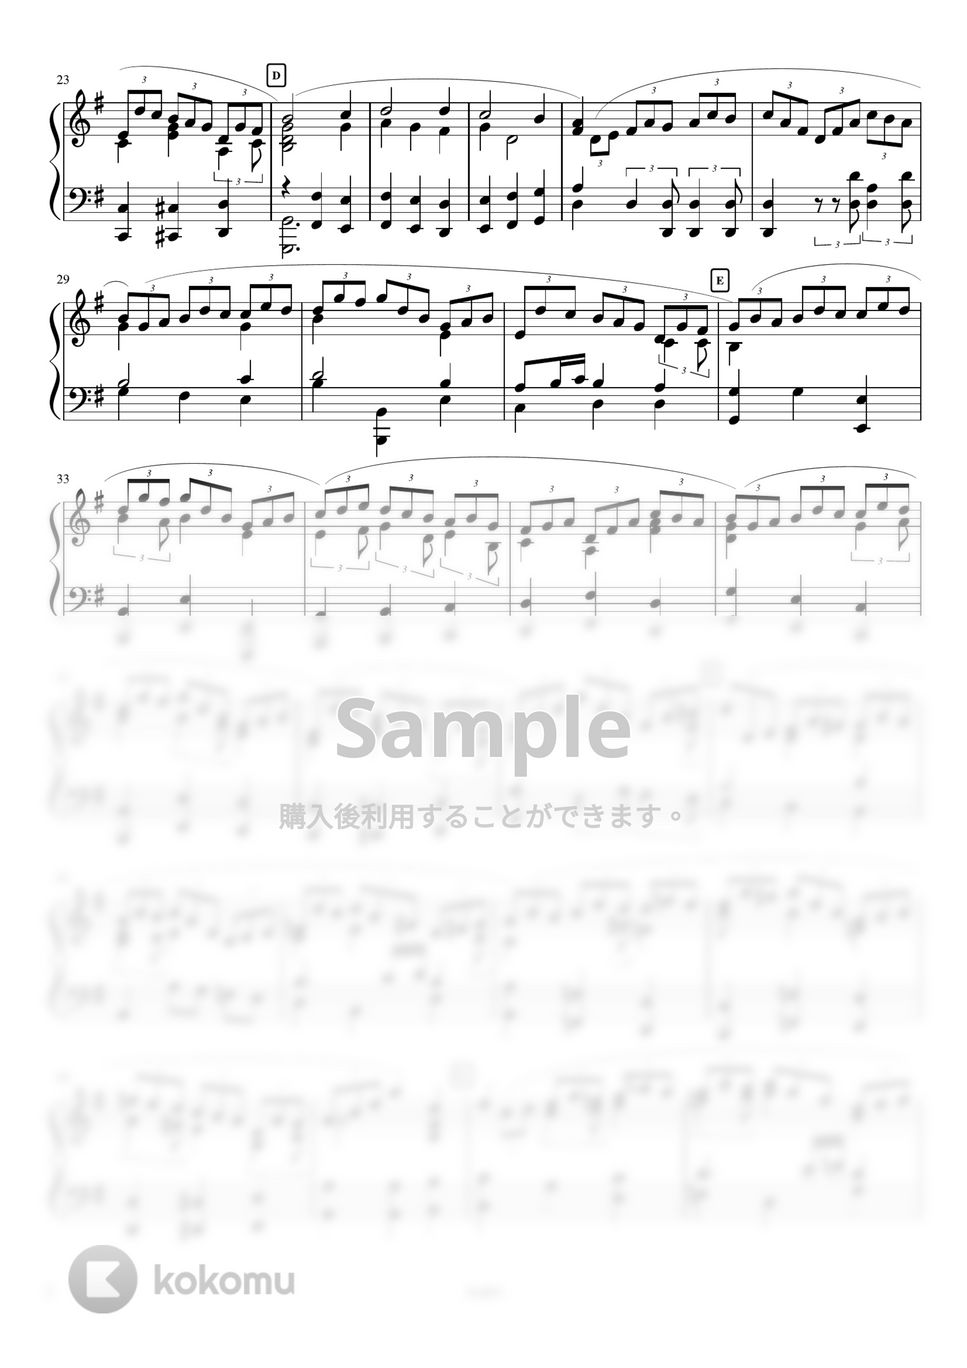 ヨハン・セバスチャン・バッハ - 主よ、人の望みの喜びよ (ピアノソロ、クラシック、主よ人の望みの喜びよ) by AsukA818